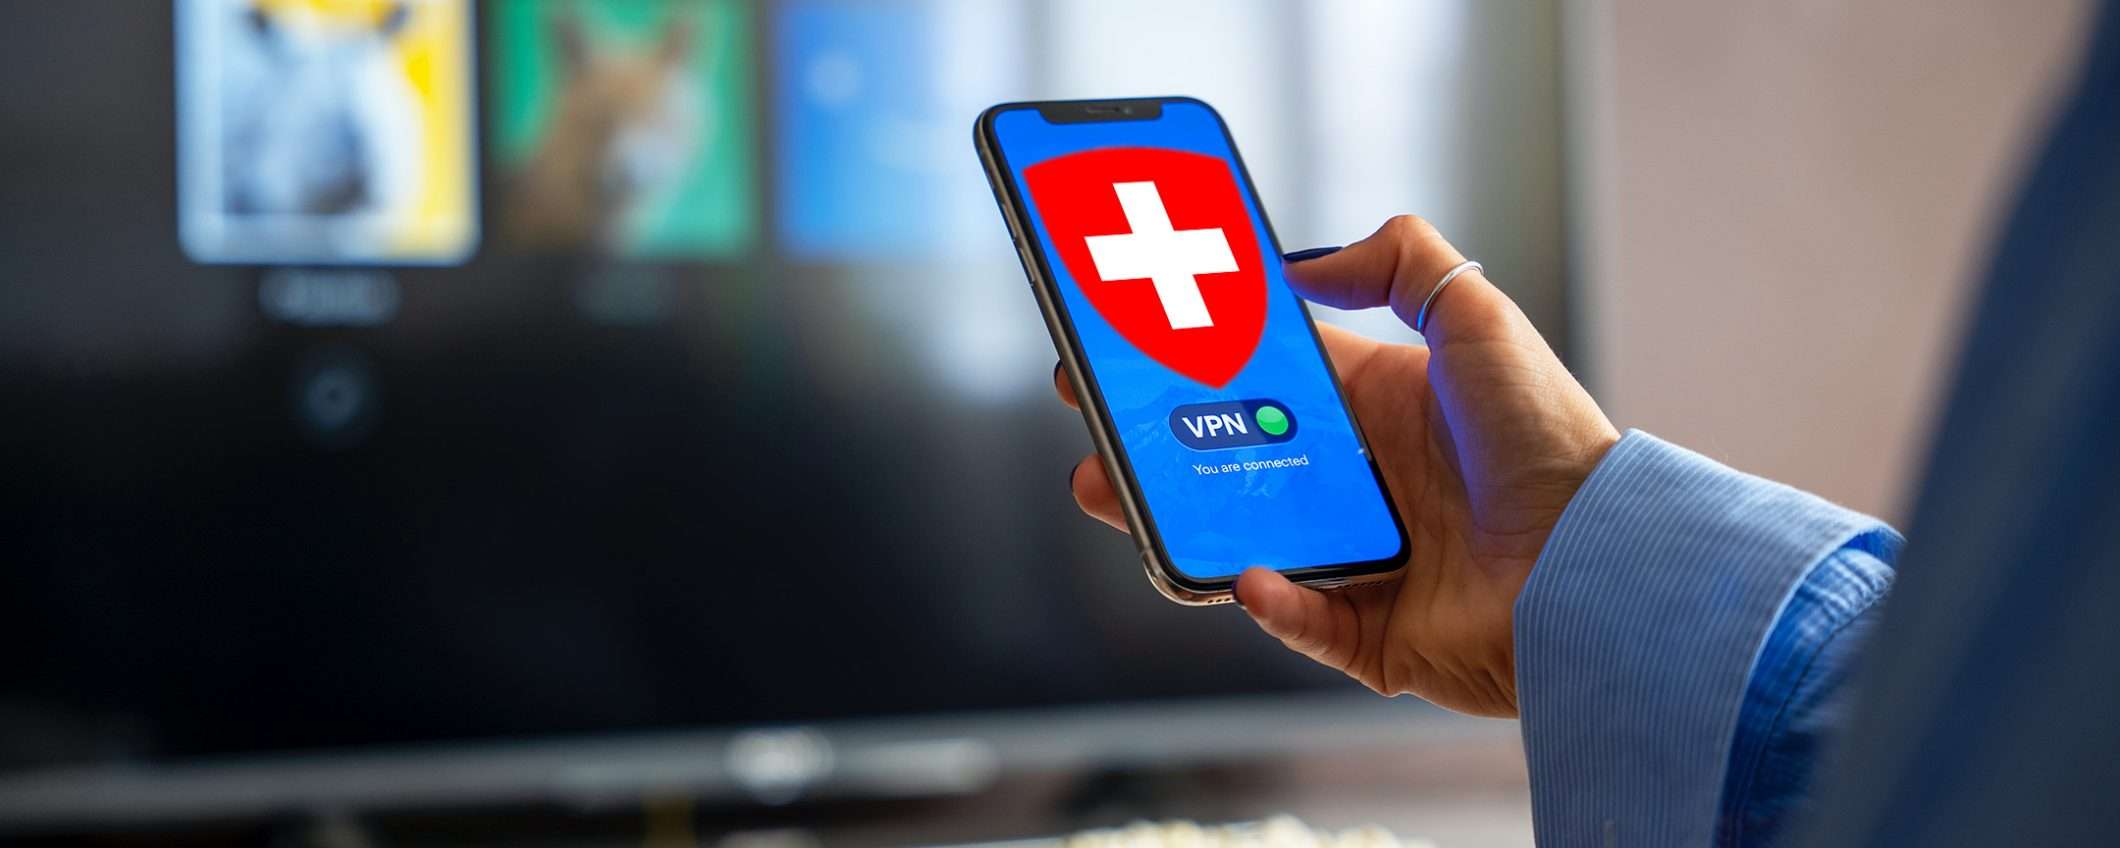 Le migliori VPN per la Svizzera (per velocità e sicurezza)